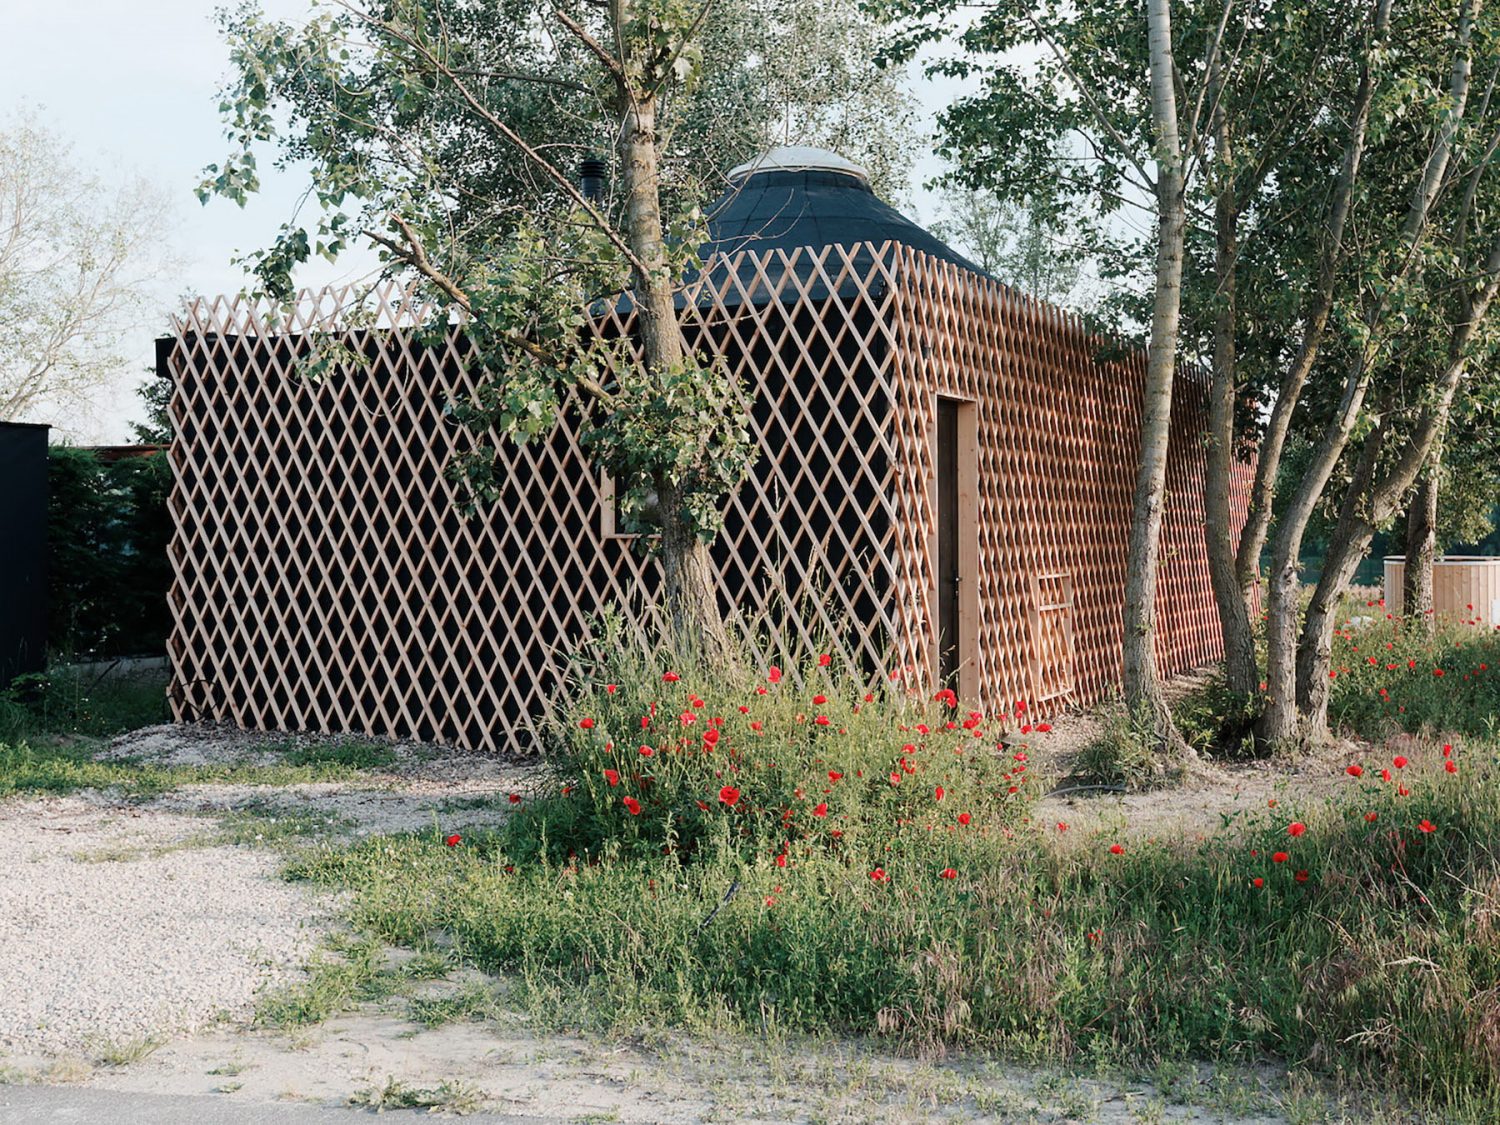 Attila | Oval-Shaped Cottage by JRKVC